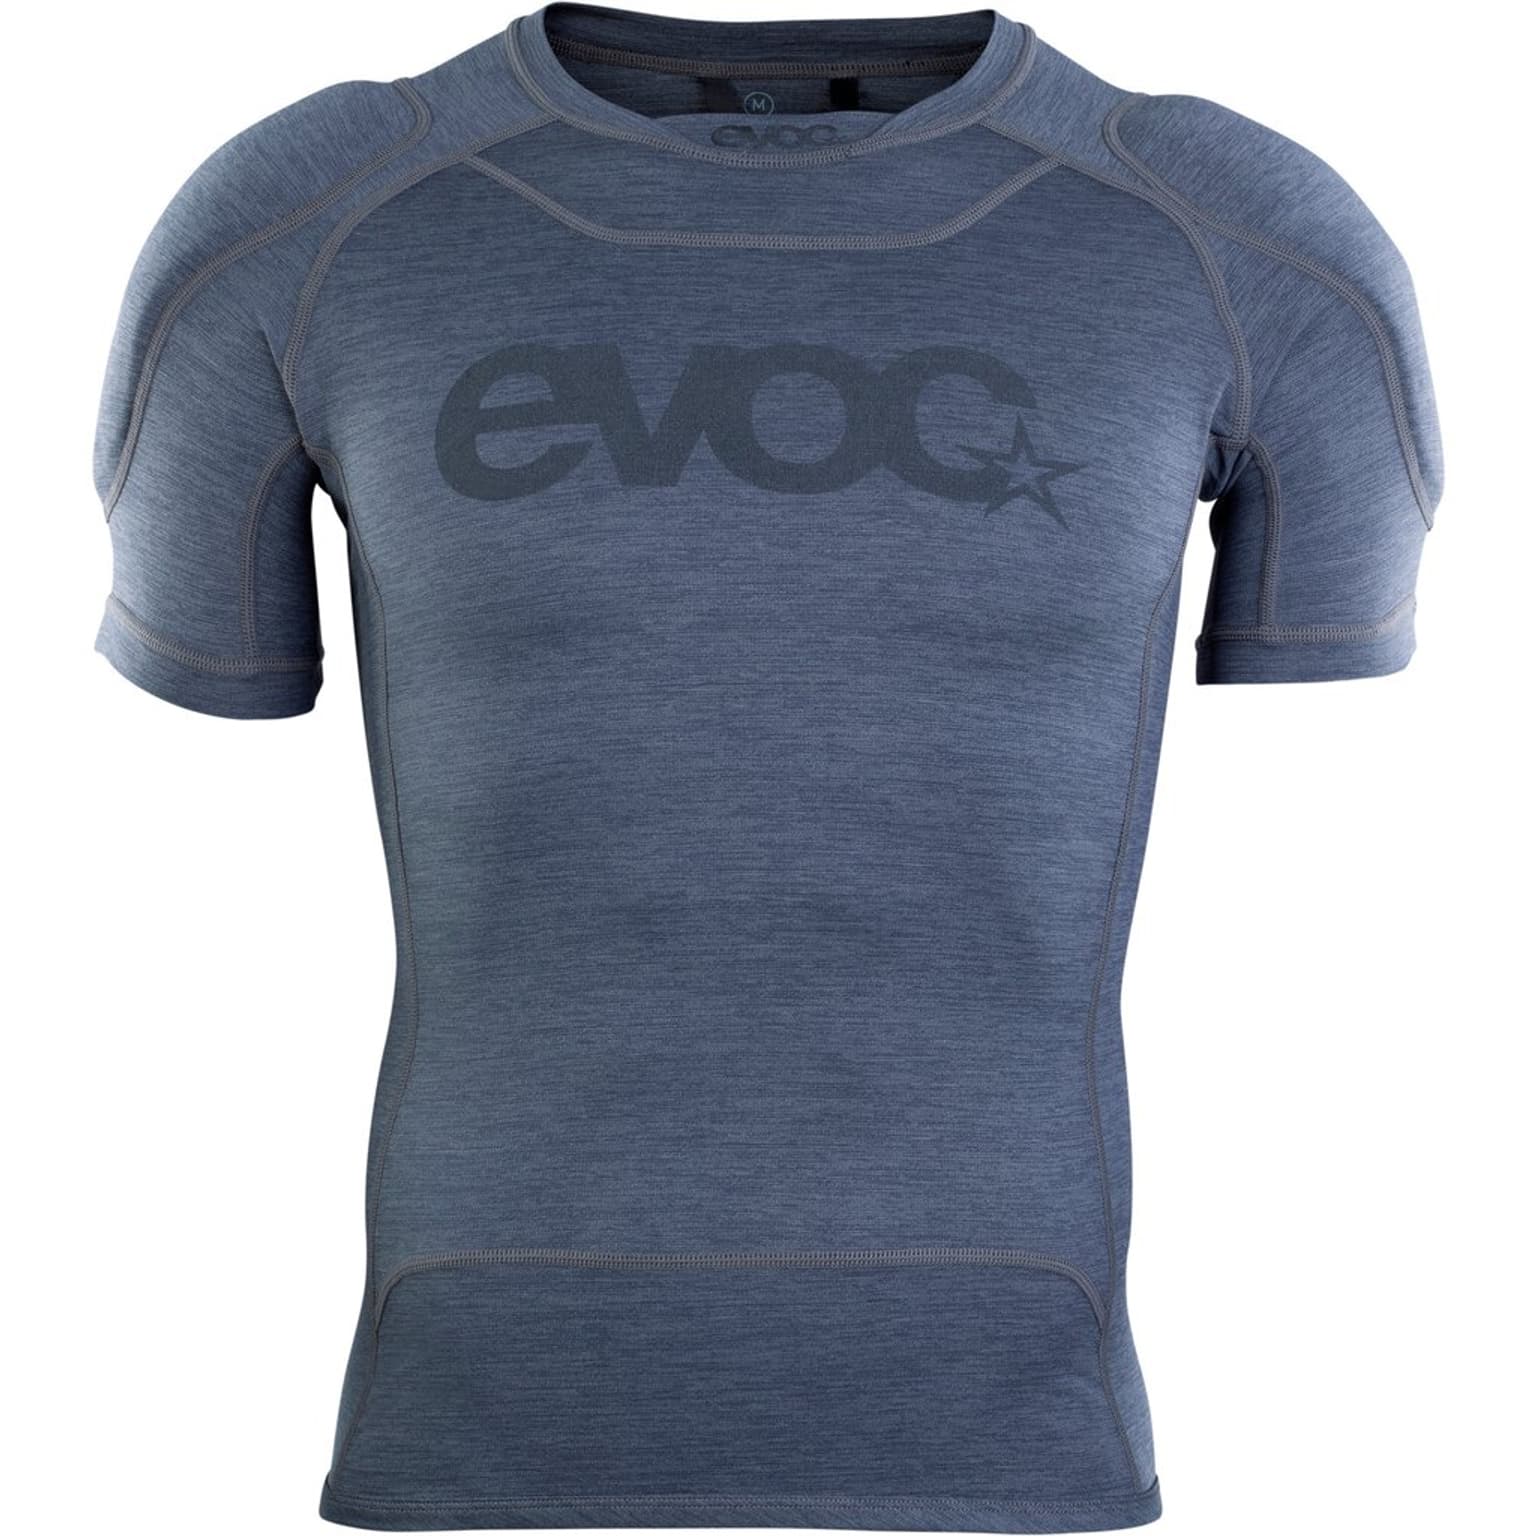 Evoc Evoc Enduro Shirt Protections gris-fonce 1